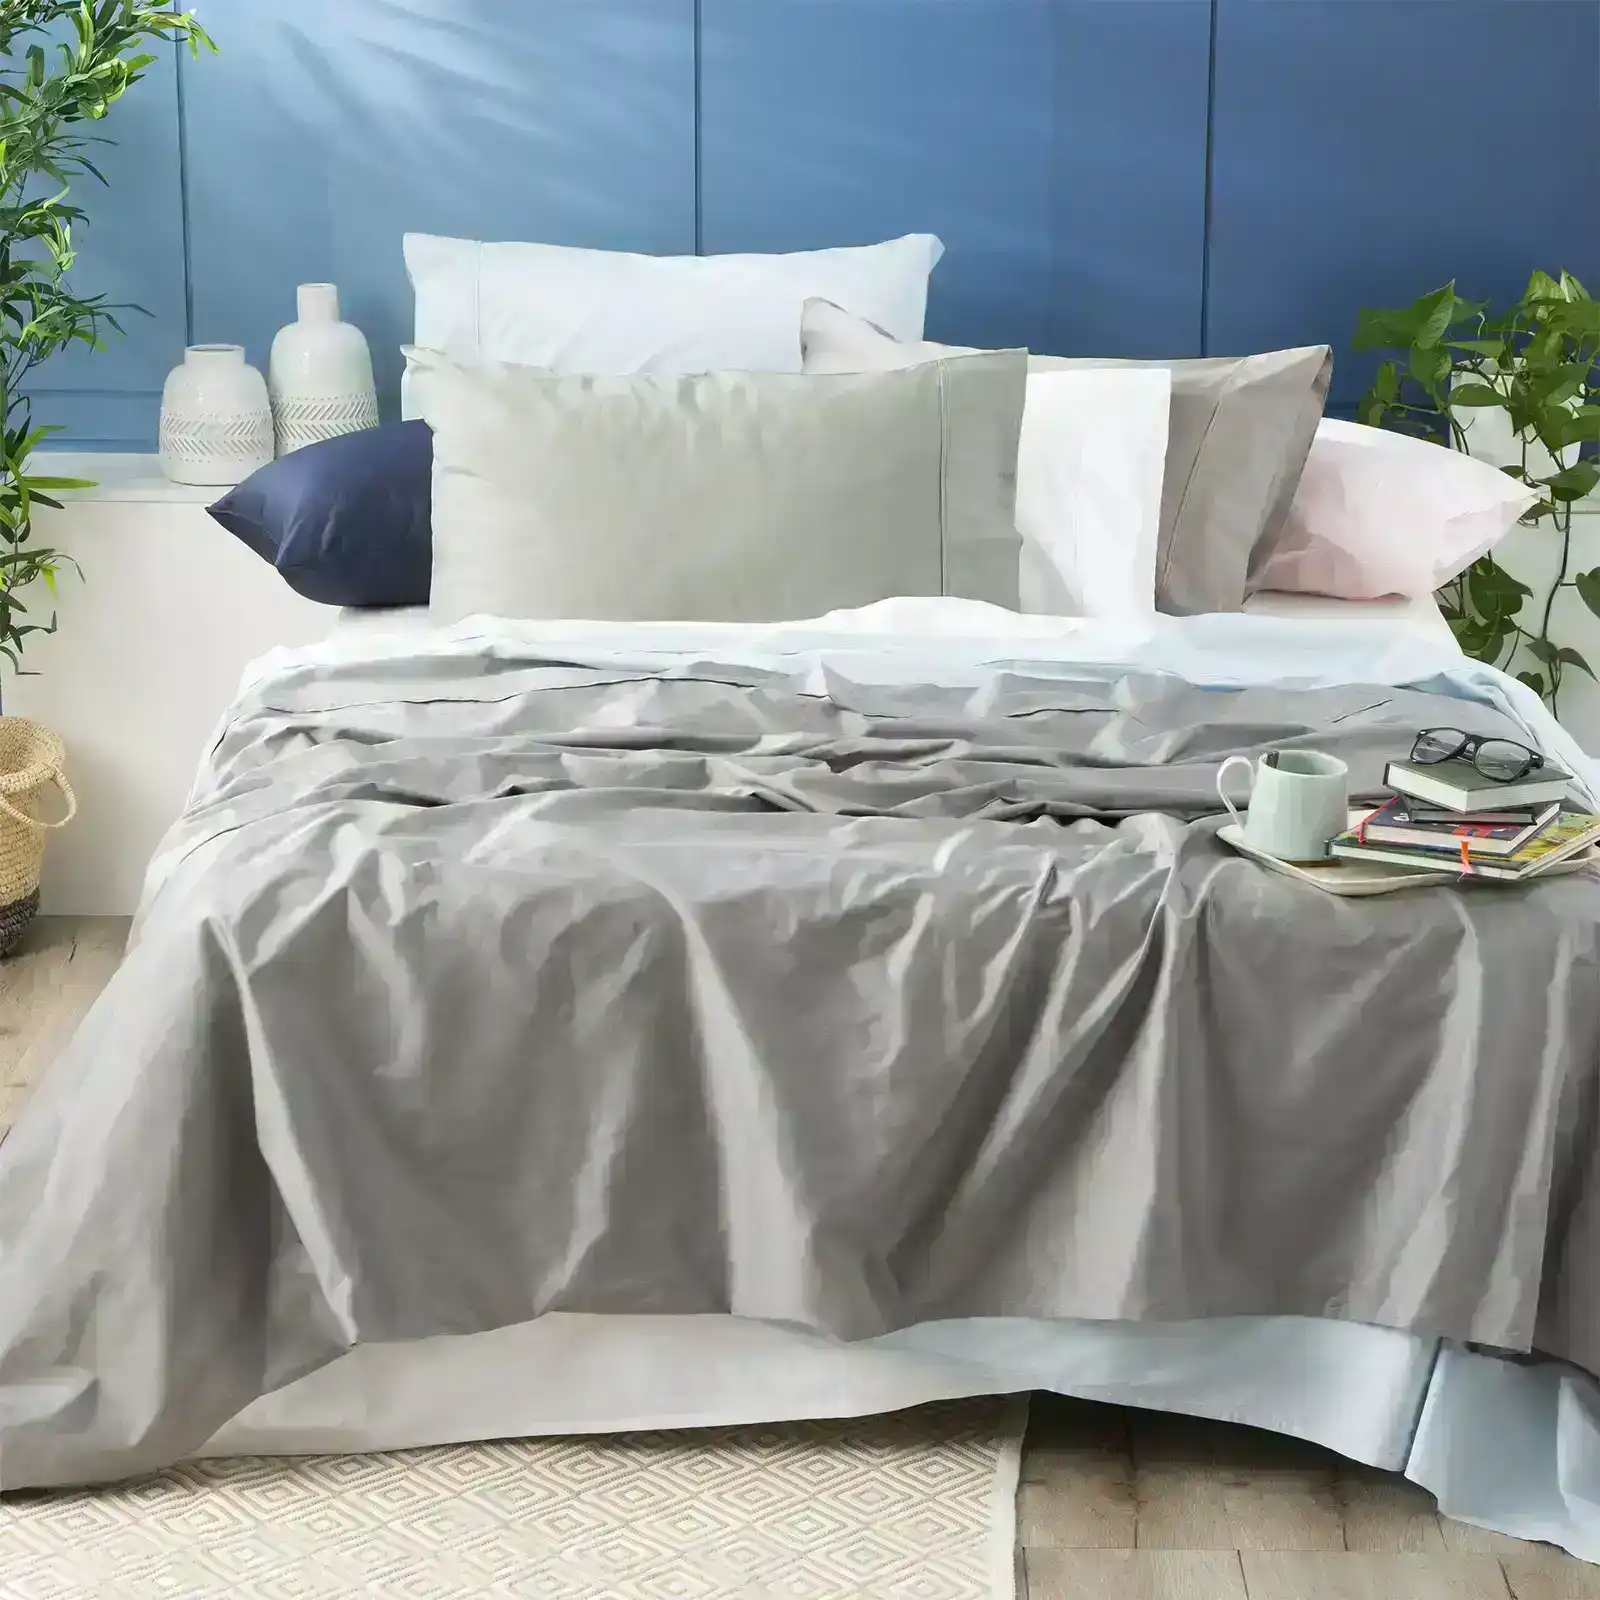 Park Avenue Queen Single Bed Sheet/Pillowcase 500TC Bamboo Cotton Bedding Peach